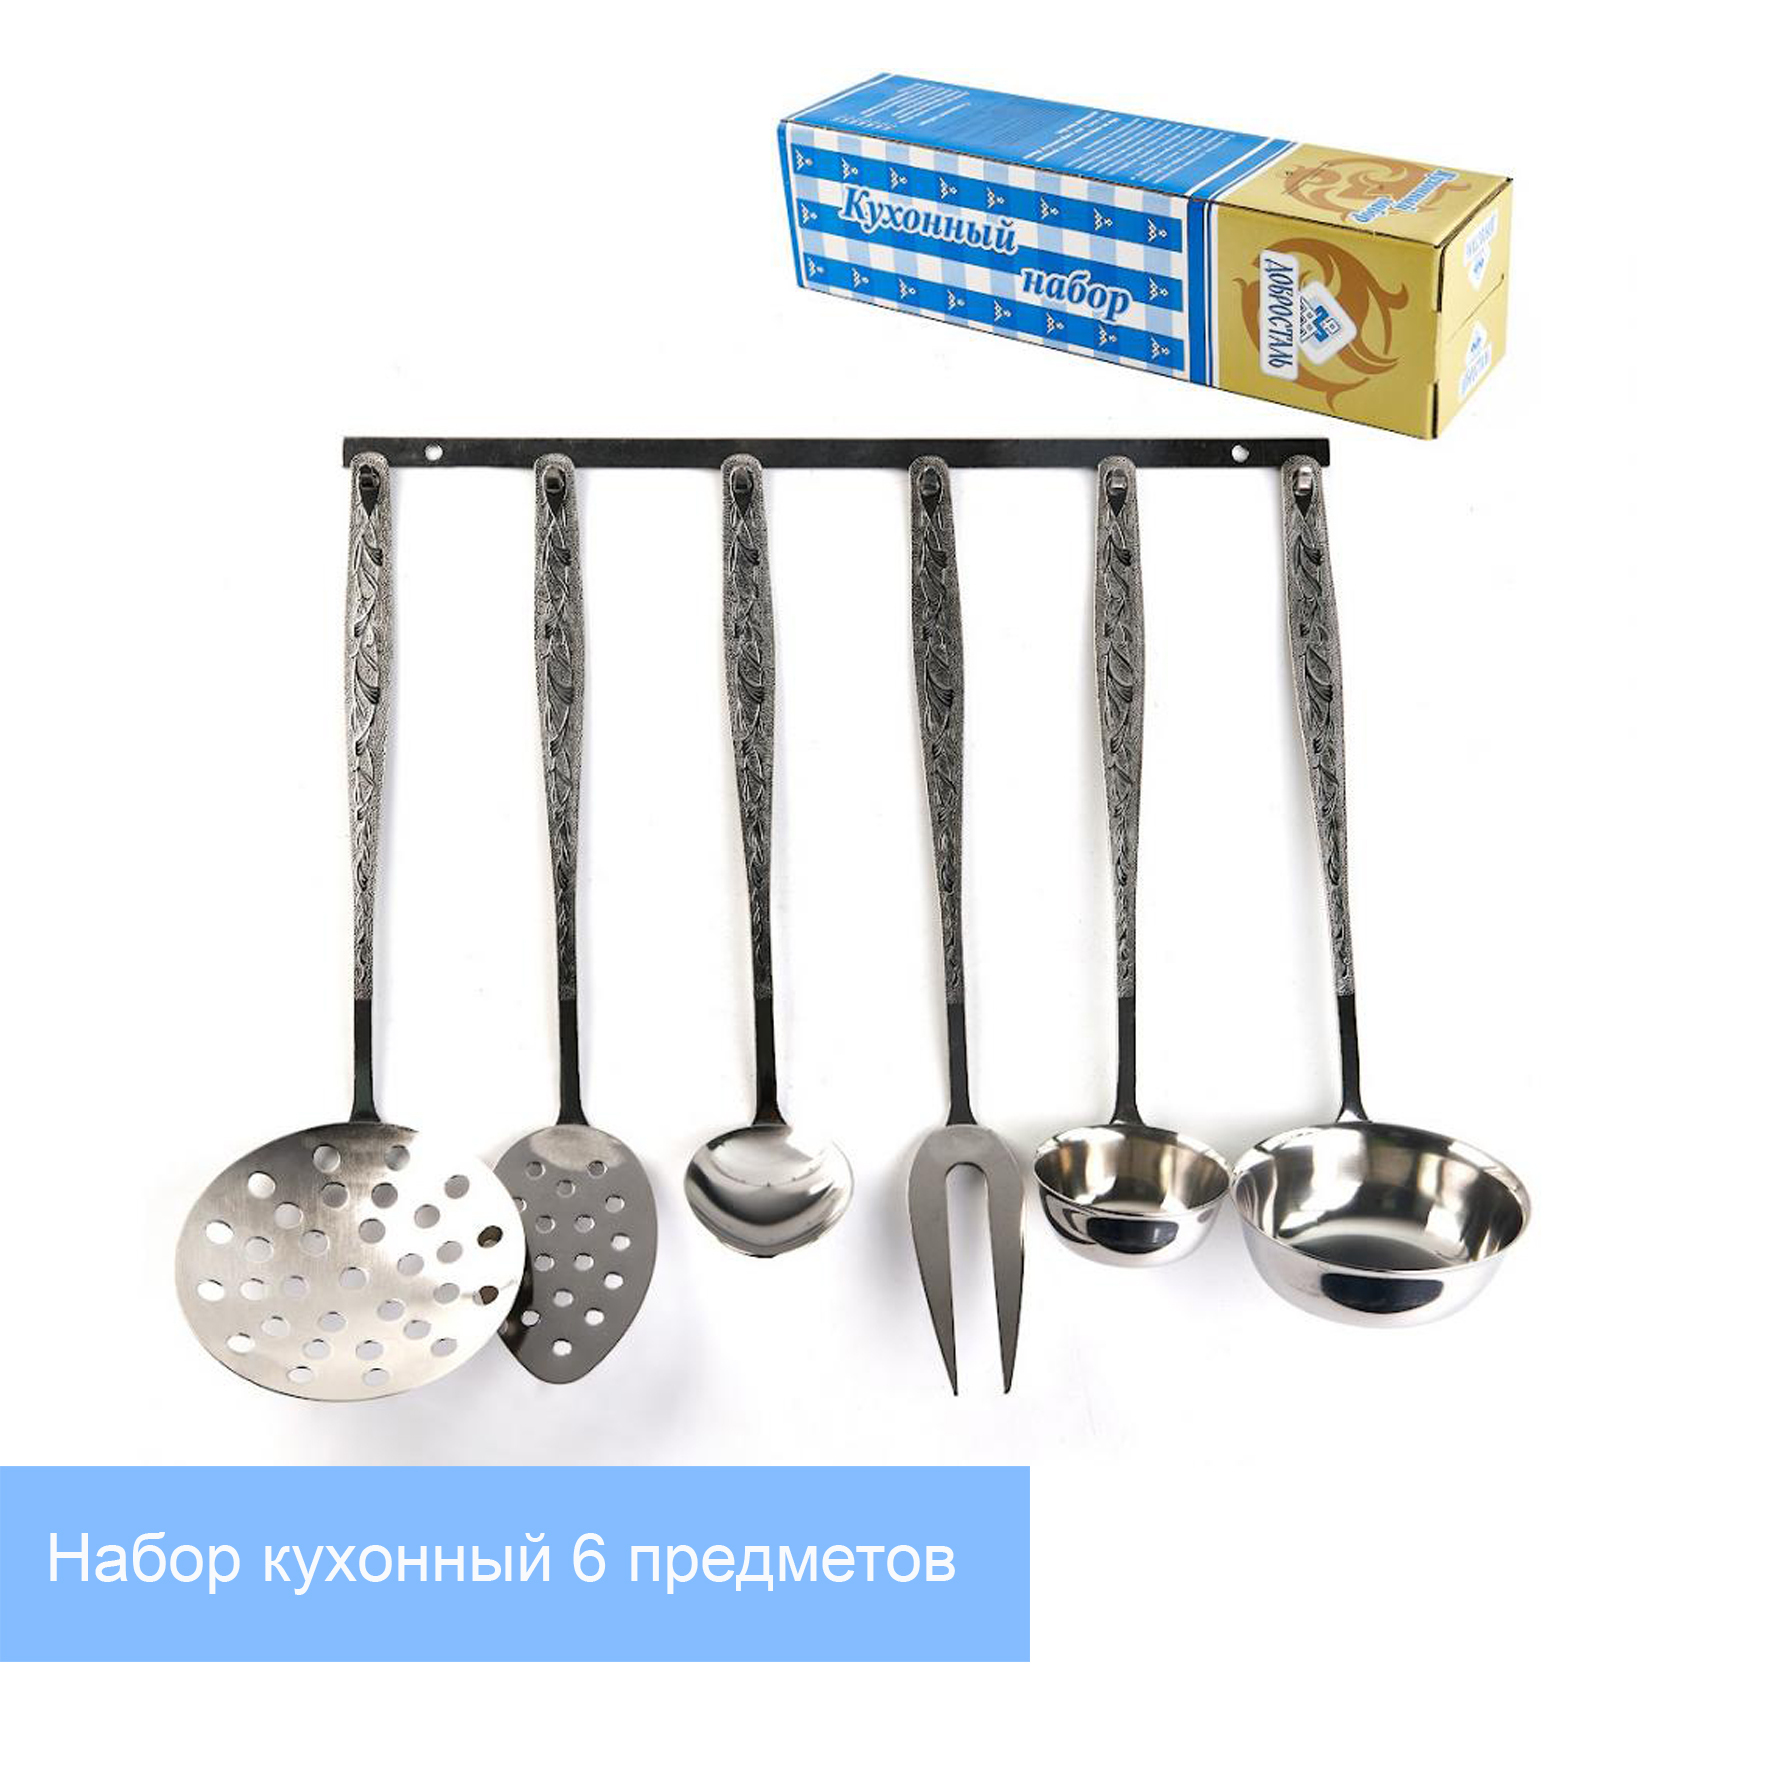 Купить Кухонную Утварь В Челябинске